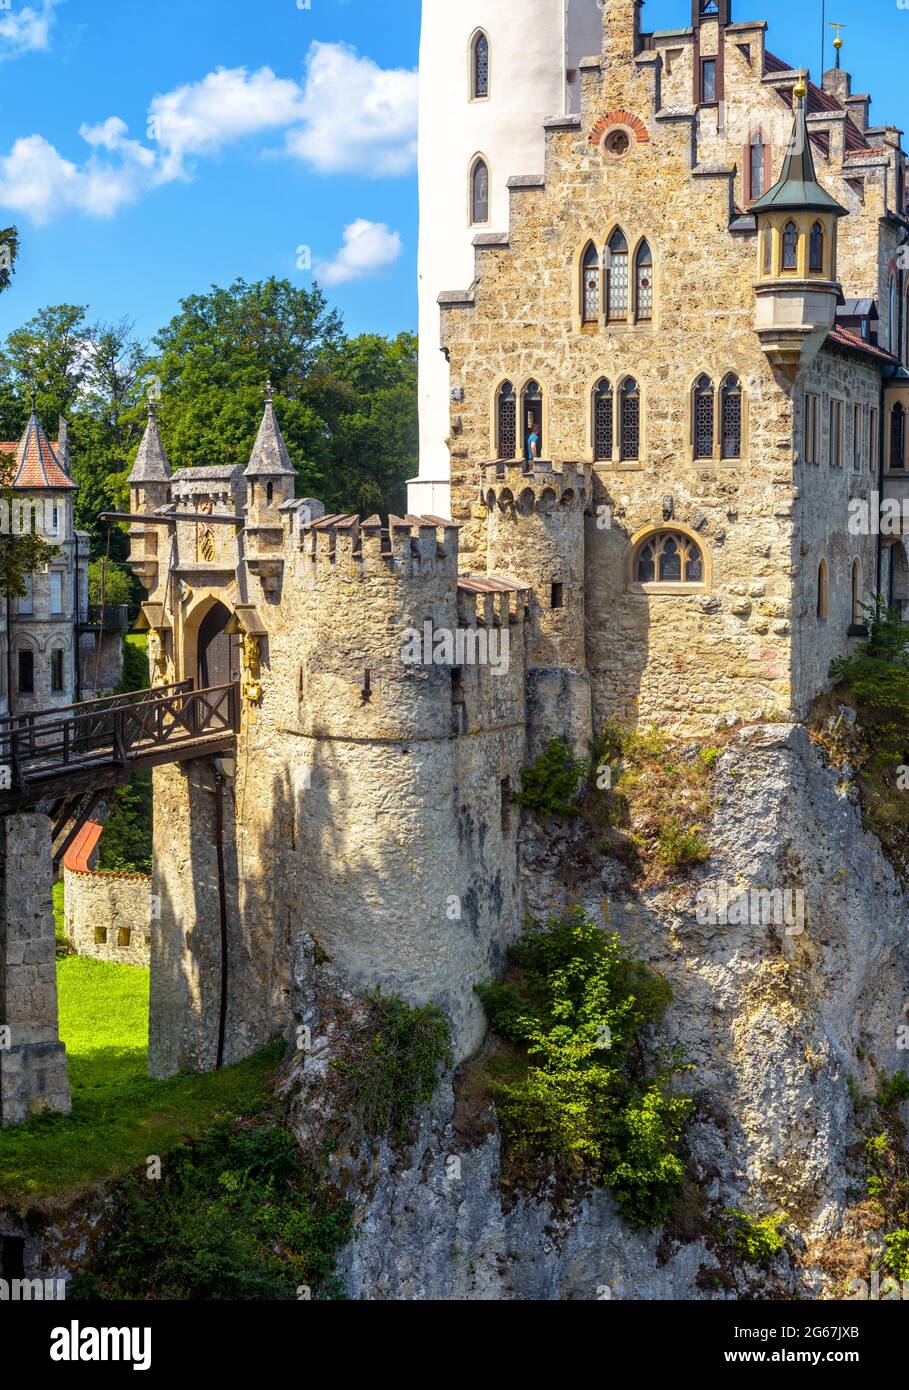 Primo piano del castello di Lichtenstein, Germania. E' un punto di riferimento di Baden-Wurttemberg. Vista verticale del magico castello tedesco e del ponte d'ingresso. Scenario di magni Foto Stock